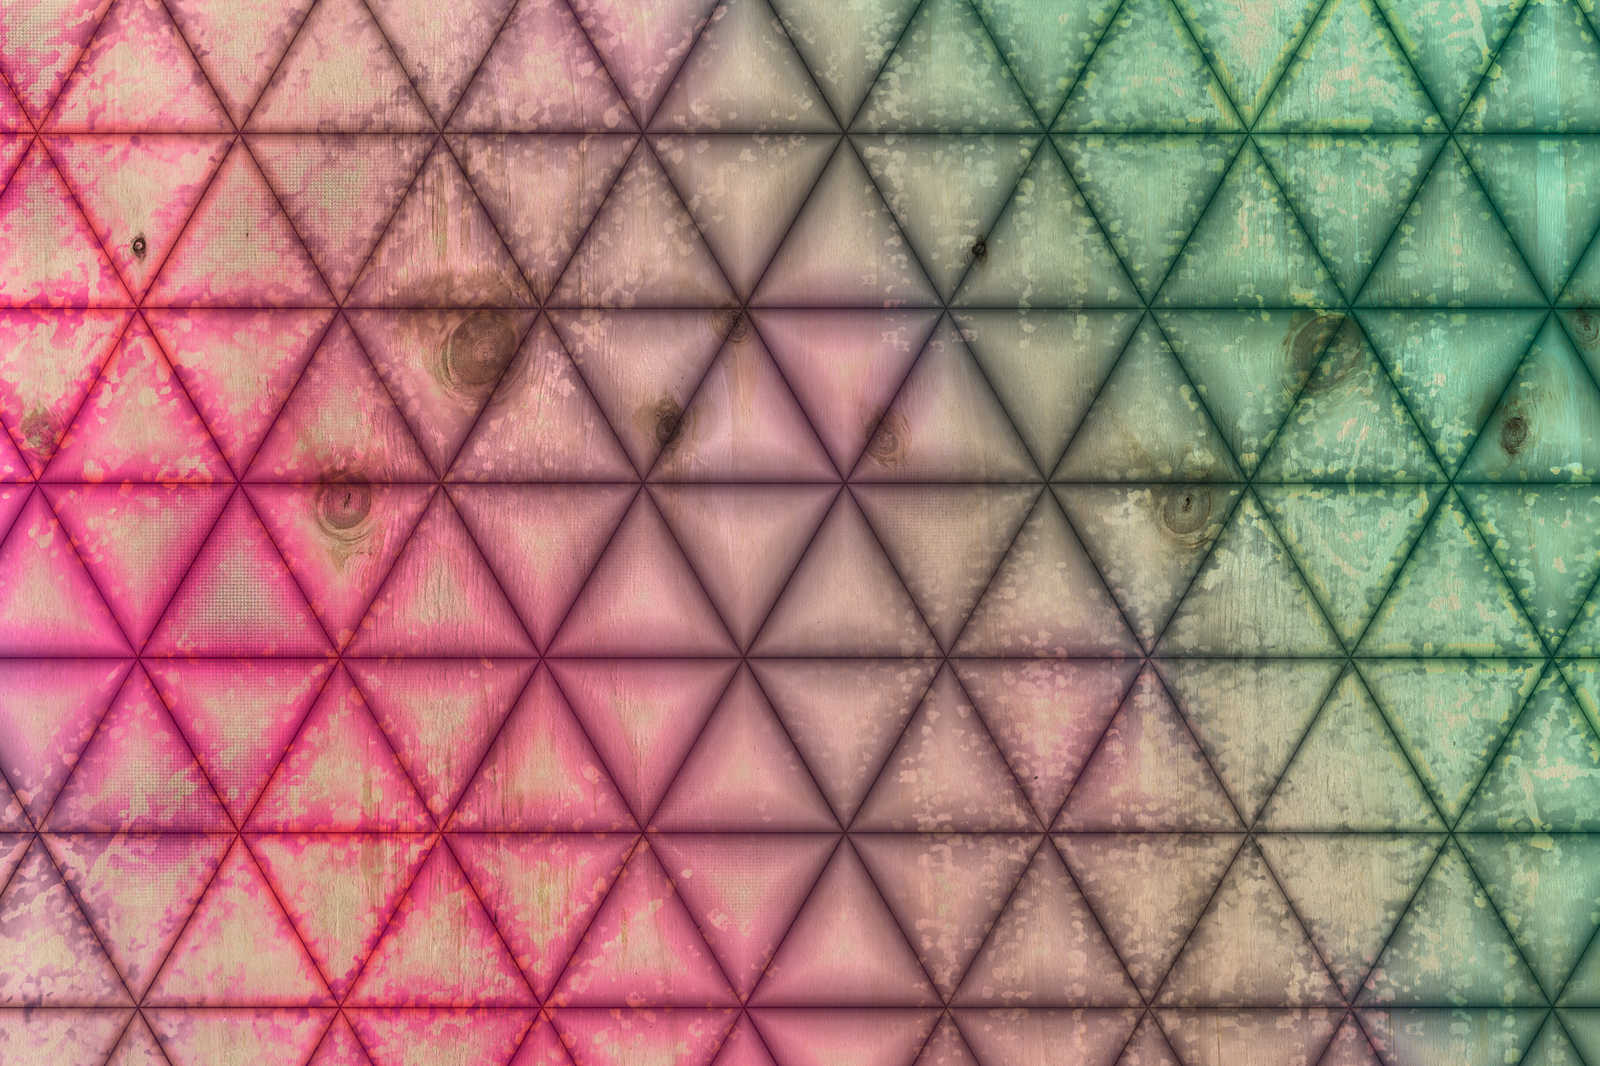             Tableau toile motif triangulaire géométrique imitation bois | vert, rose - 0,90 m x 0,60 m
        